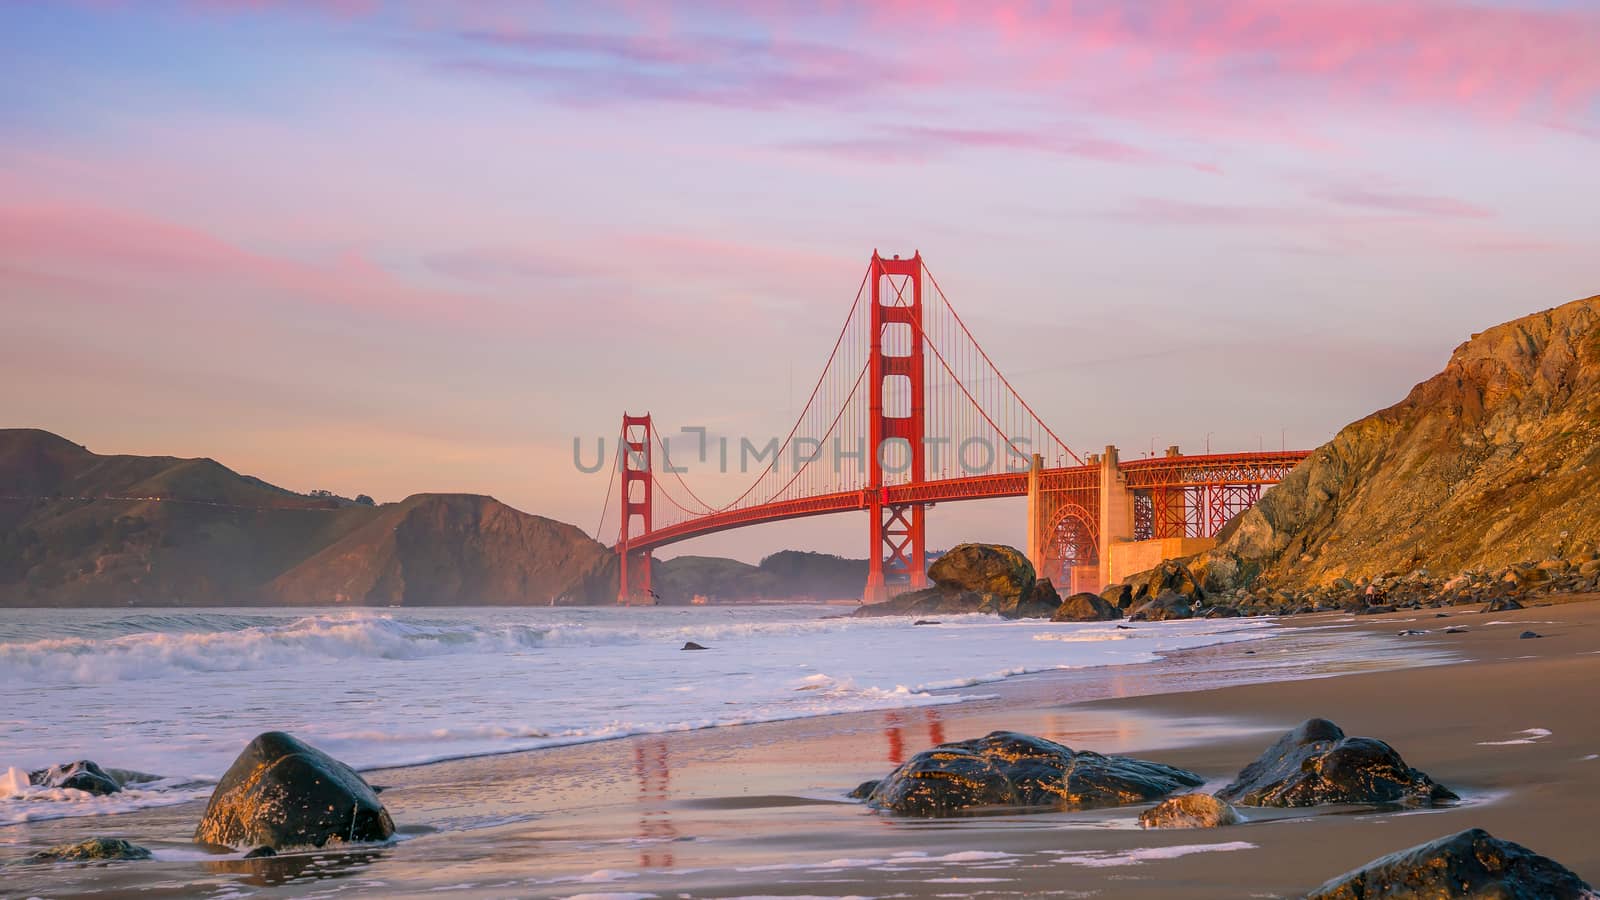 Famous Golden Gate Bridge seen from Baker Beach in beautiful golden evening light, San Francisco, USA